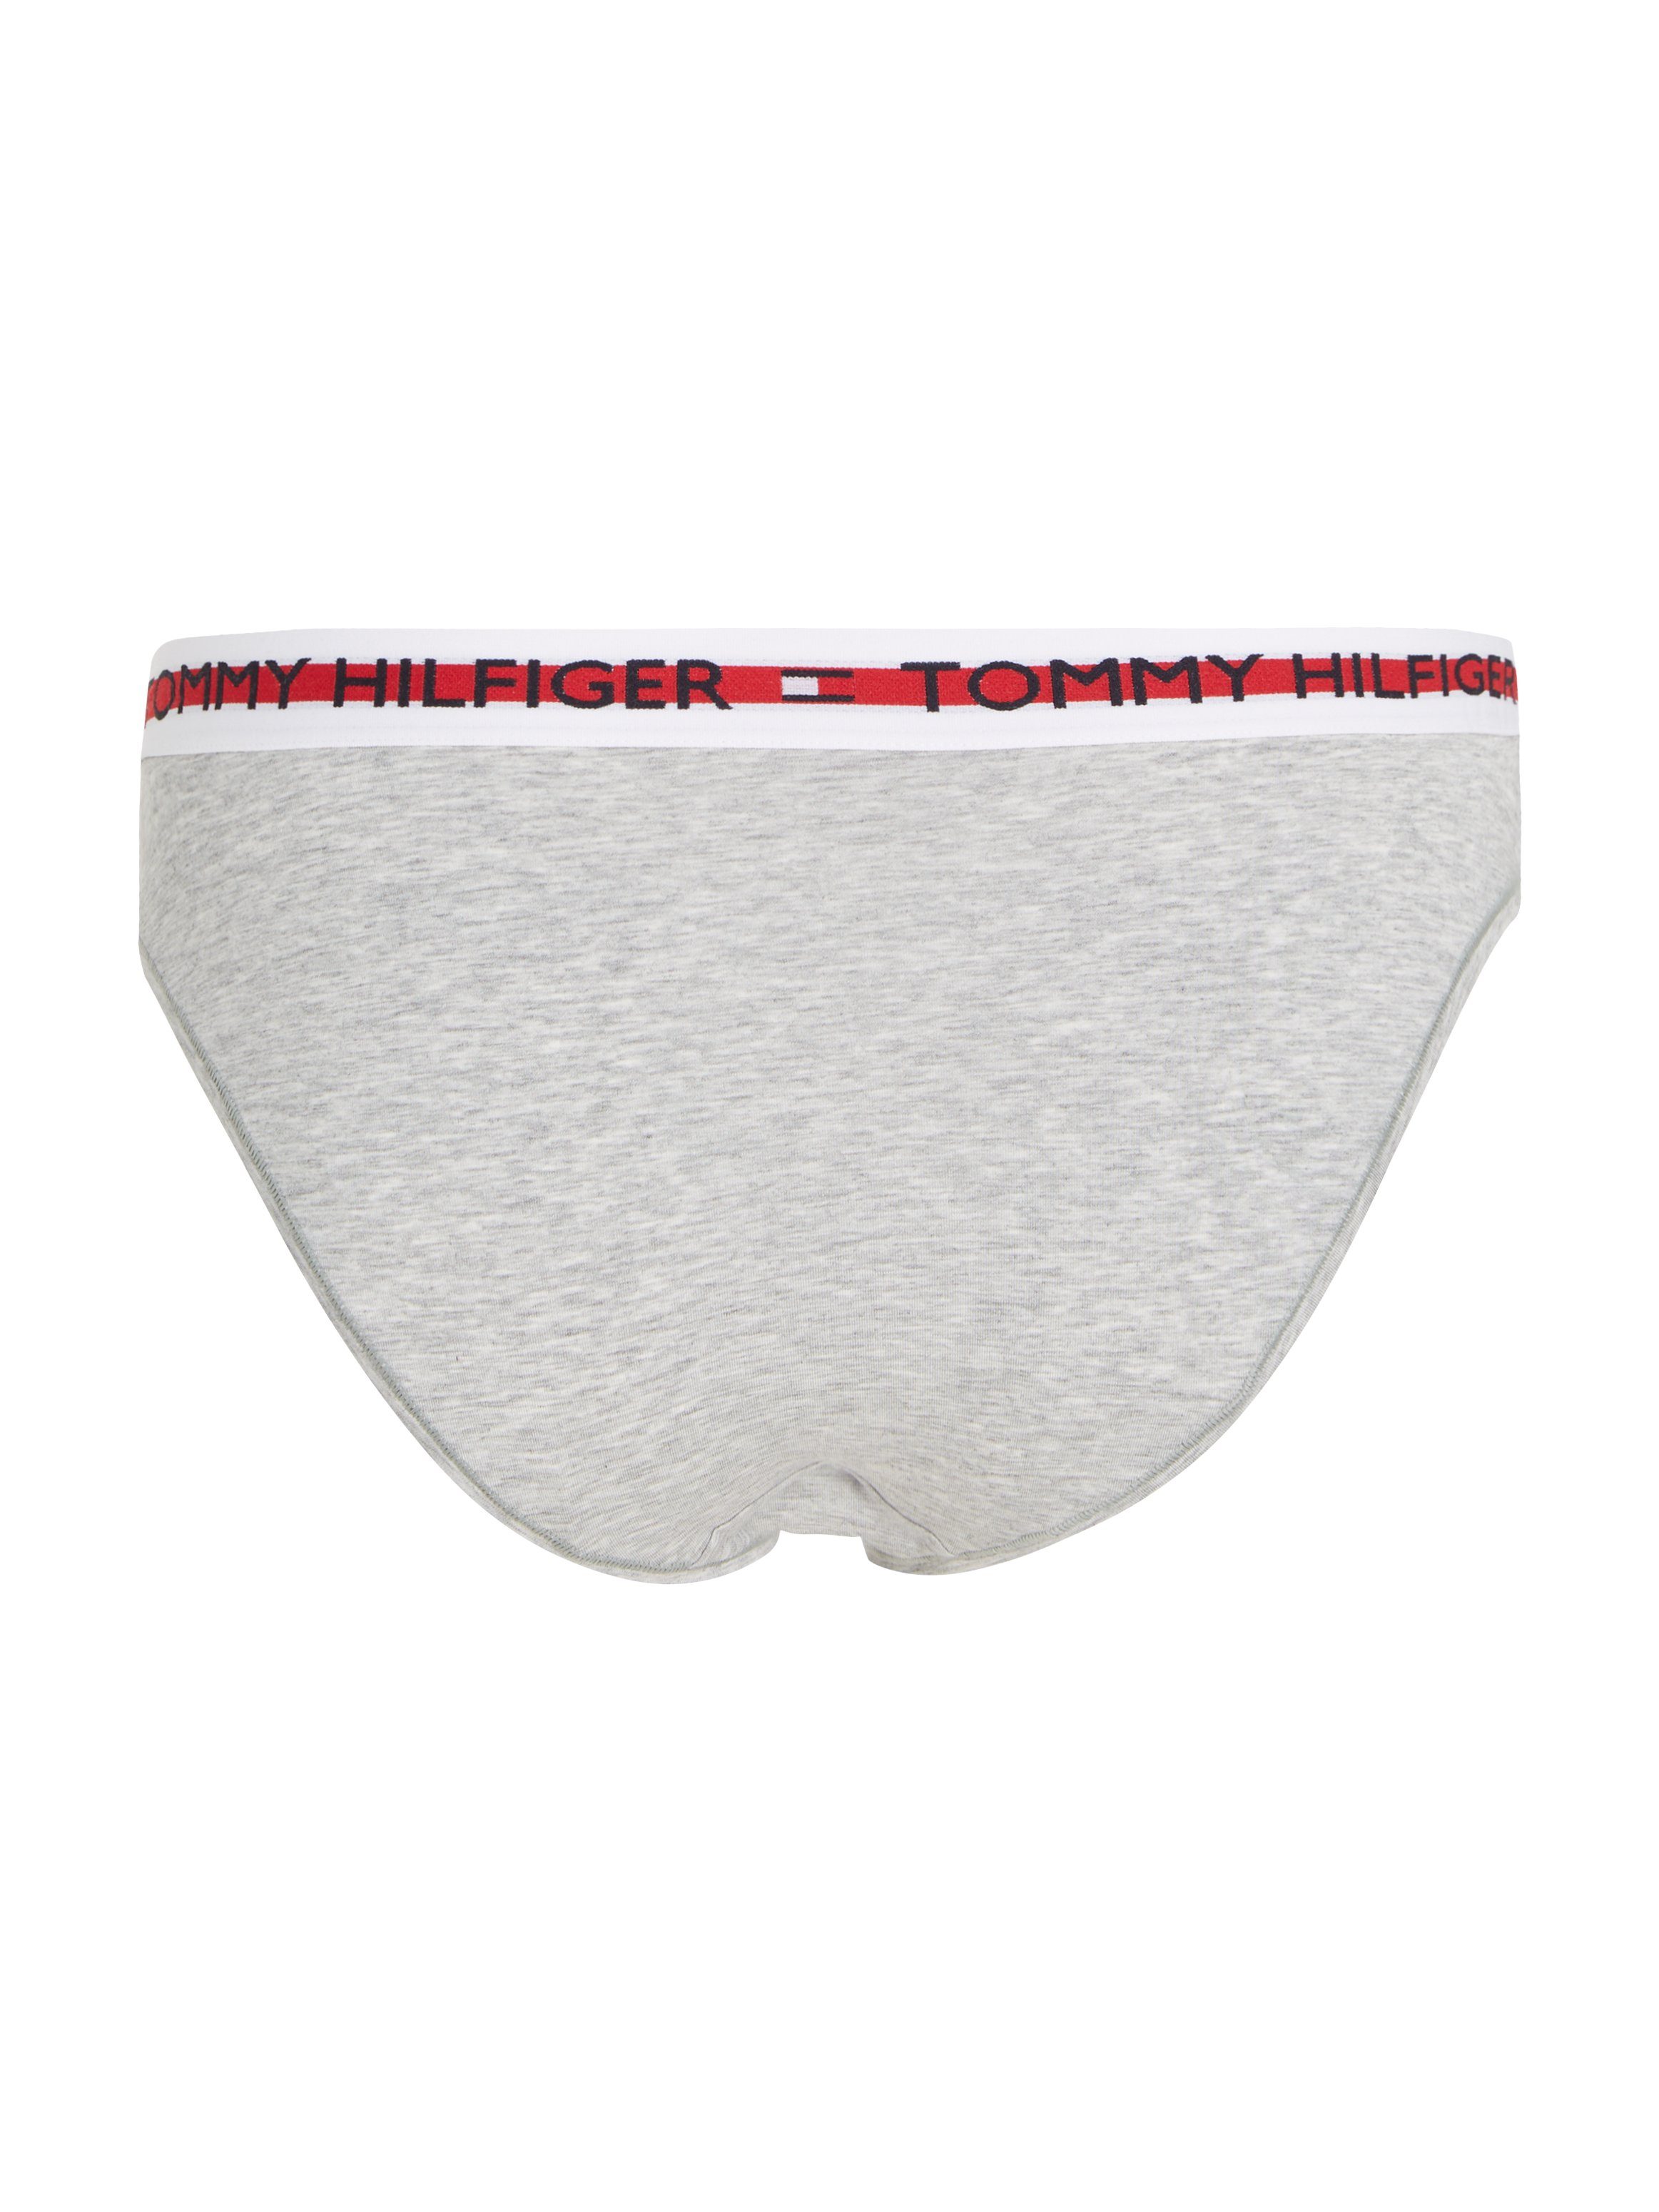 Tommy Hilfiger Underwear Bikinislip grey mid heather Bio-Baumwoll-Slip